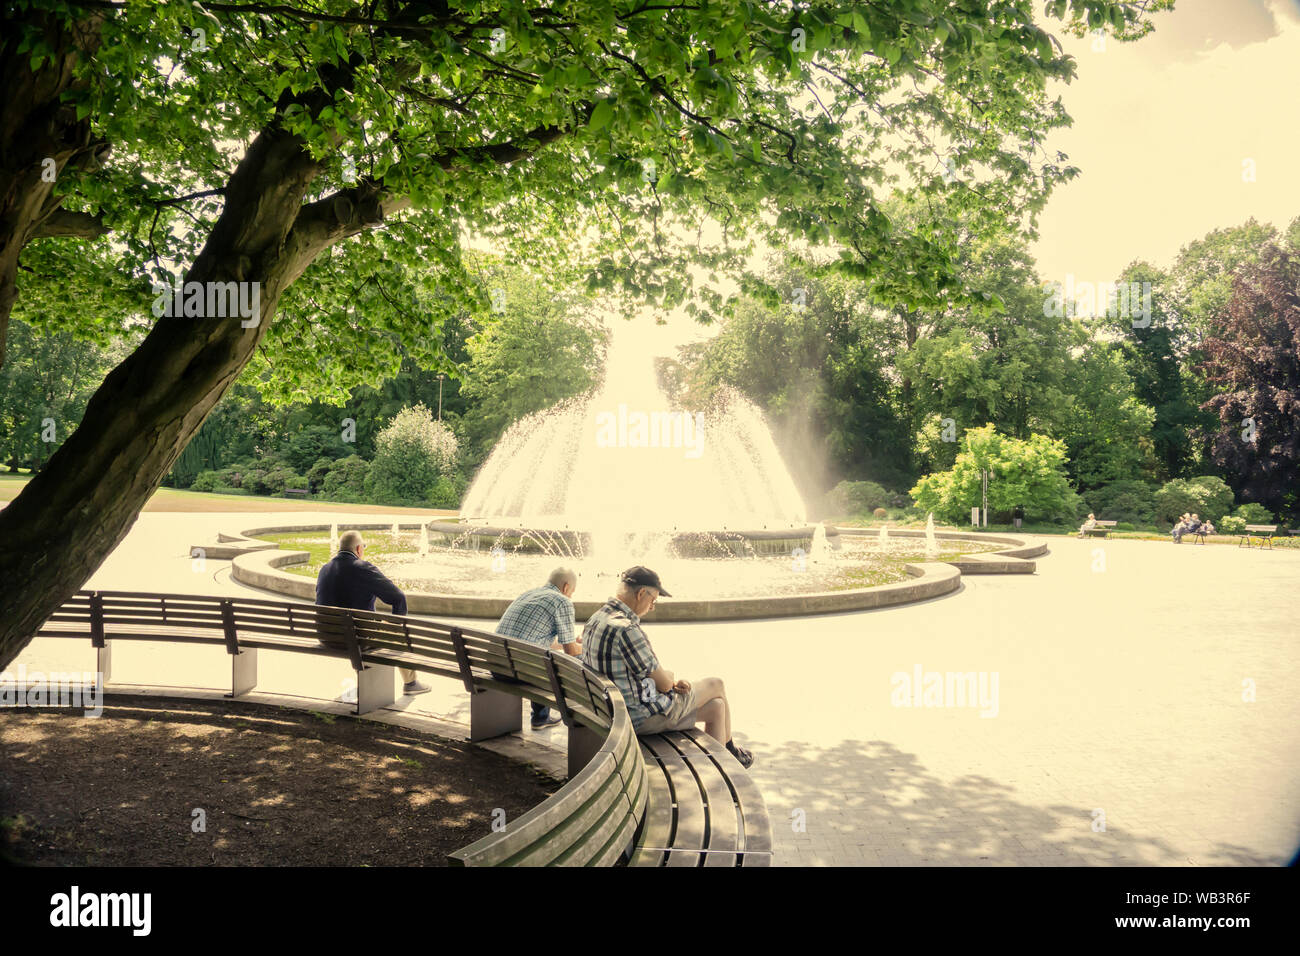 La città di Bad Oeynhausen - Bassa Sassonia Germania - 2019 06 13 - Editoriale di pensionners su una panchina nel parco riflettendo sulle loro vite di fronte a una fontana Foto Stock